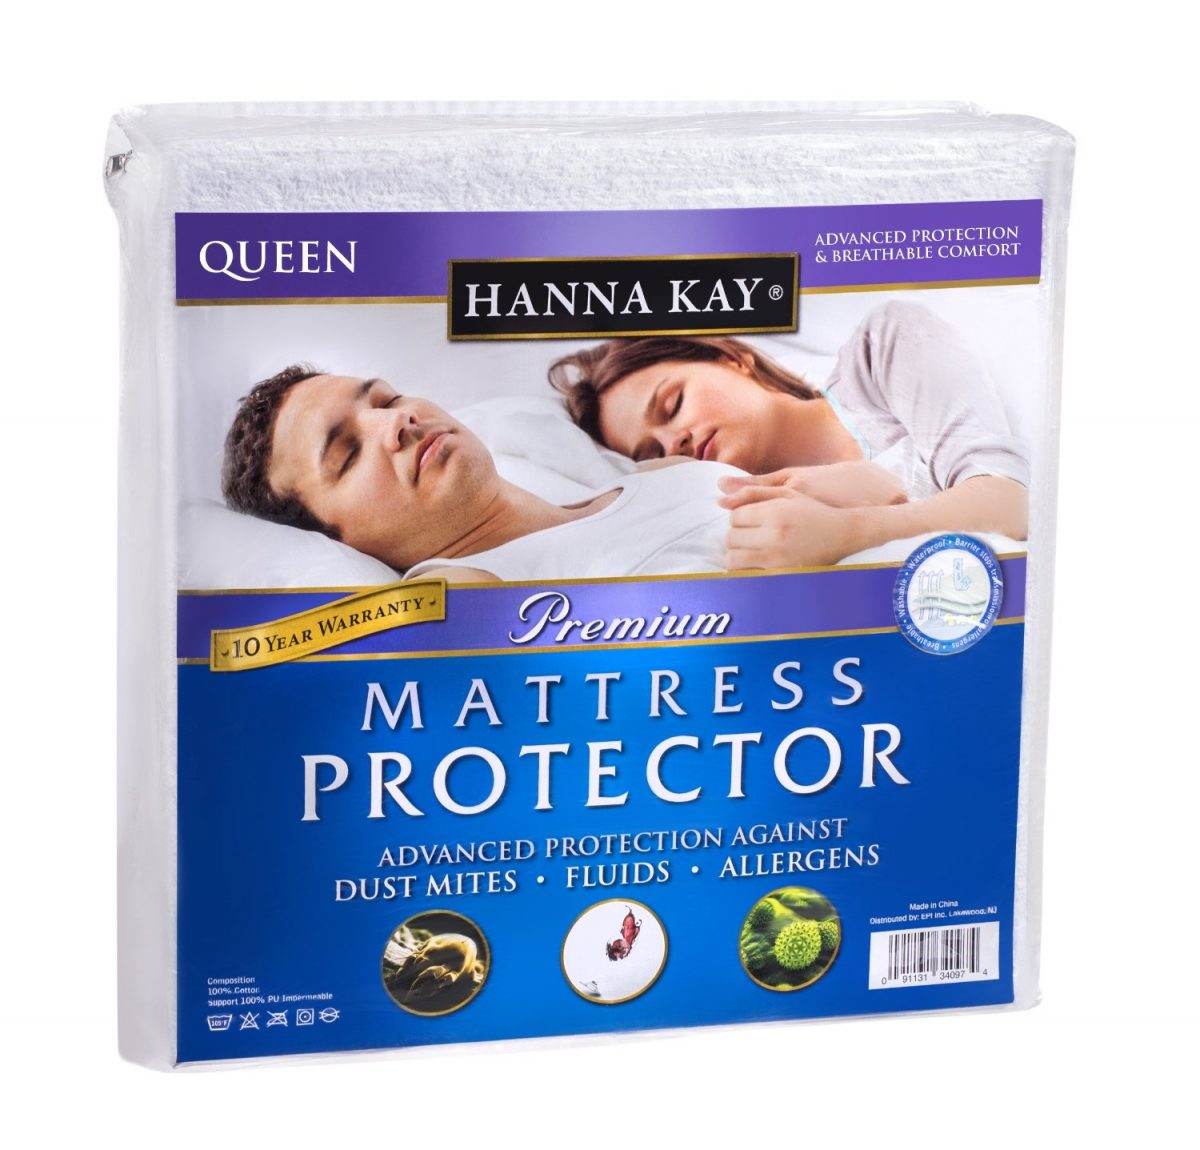 mattress protector reviews